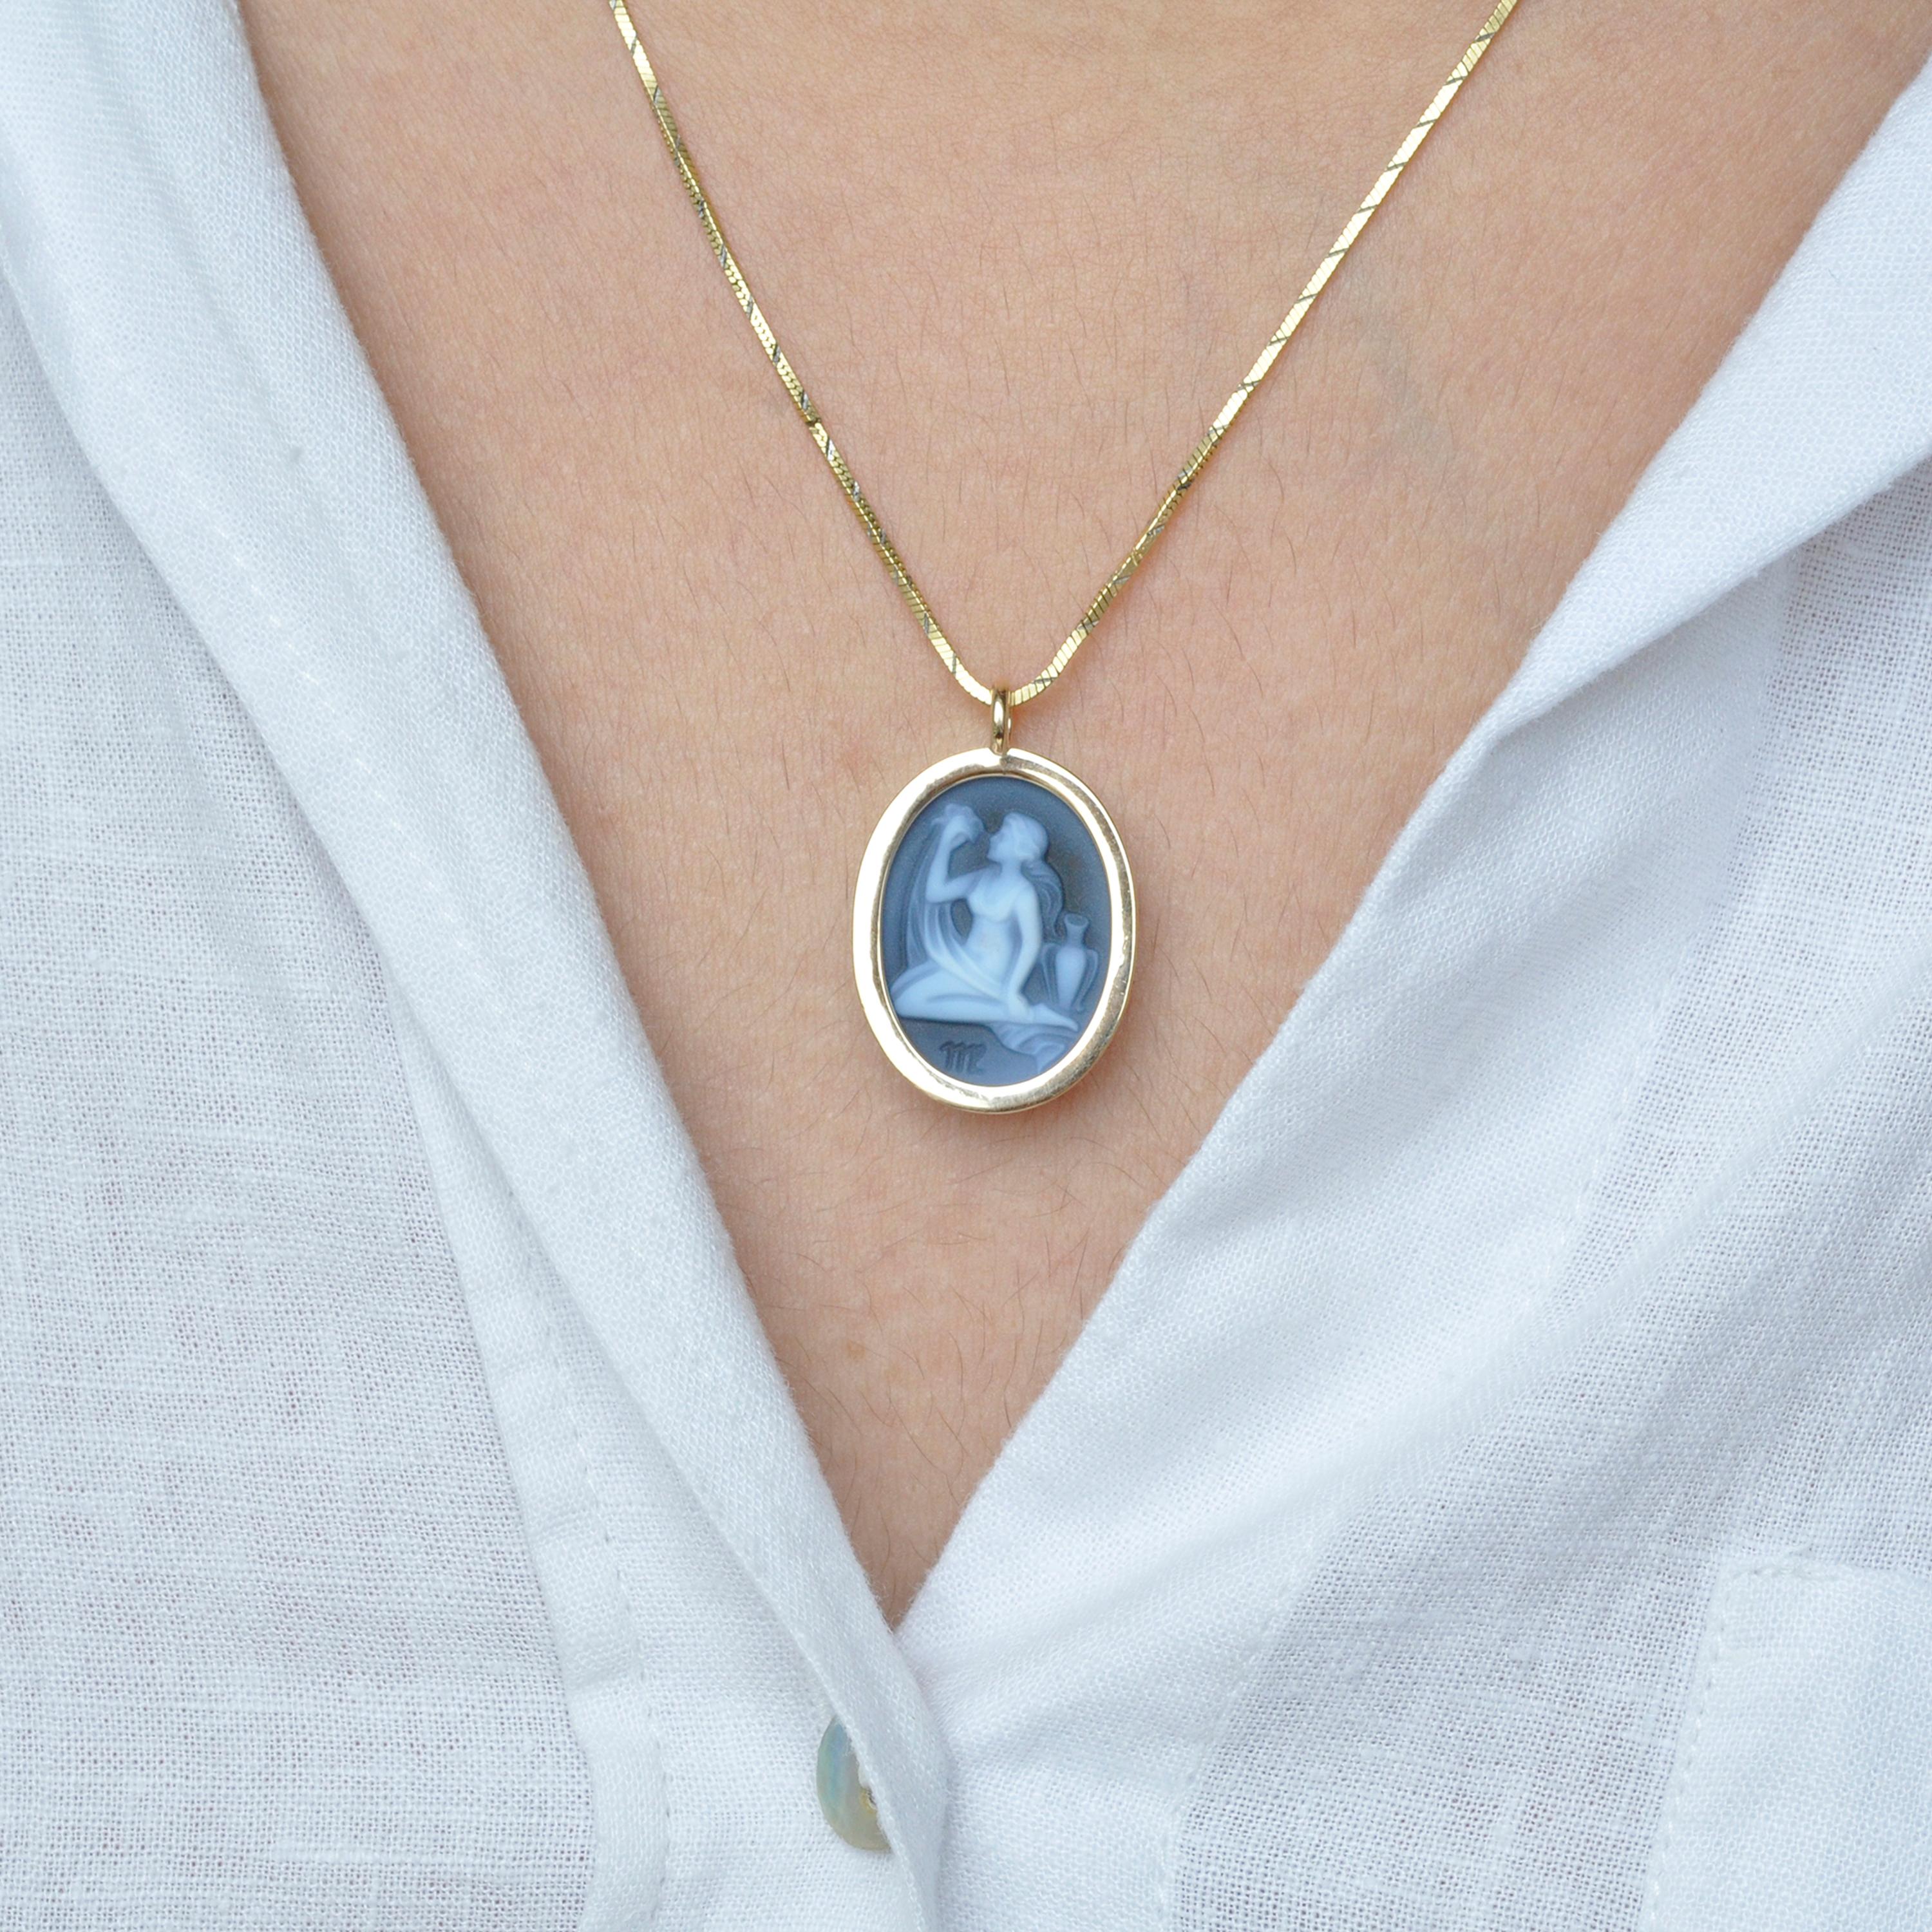 Le collier pendentif réversible orné d'un diamant zodiacal camée sculpté dans le signe solaire de la Vierge en or 14 carats est un bijou époustouflant qui incarne l'artisanat exquis, l'élégance et la personnalisation. Avec son design réversible, il